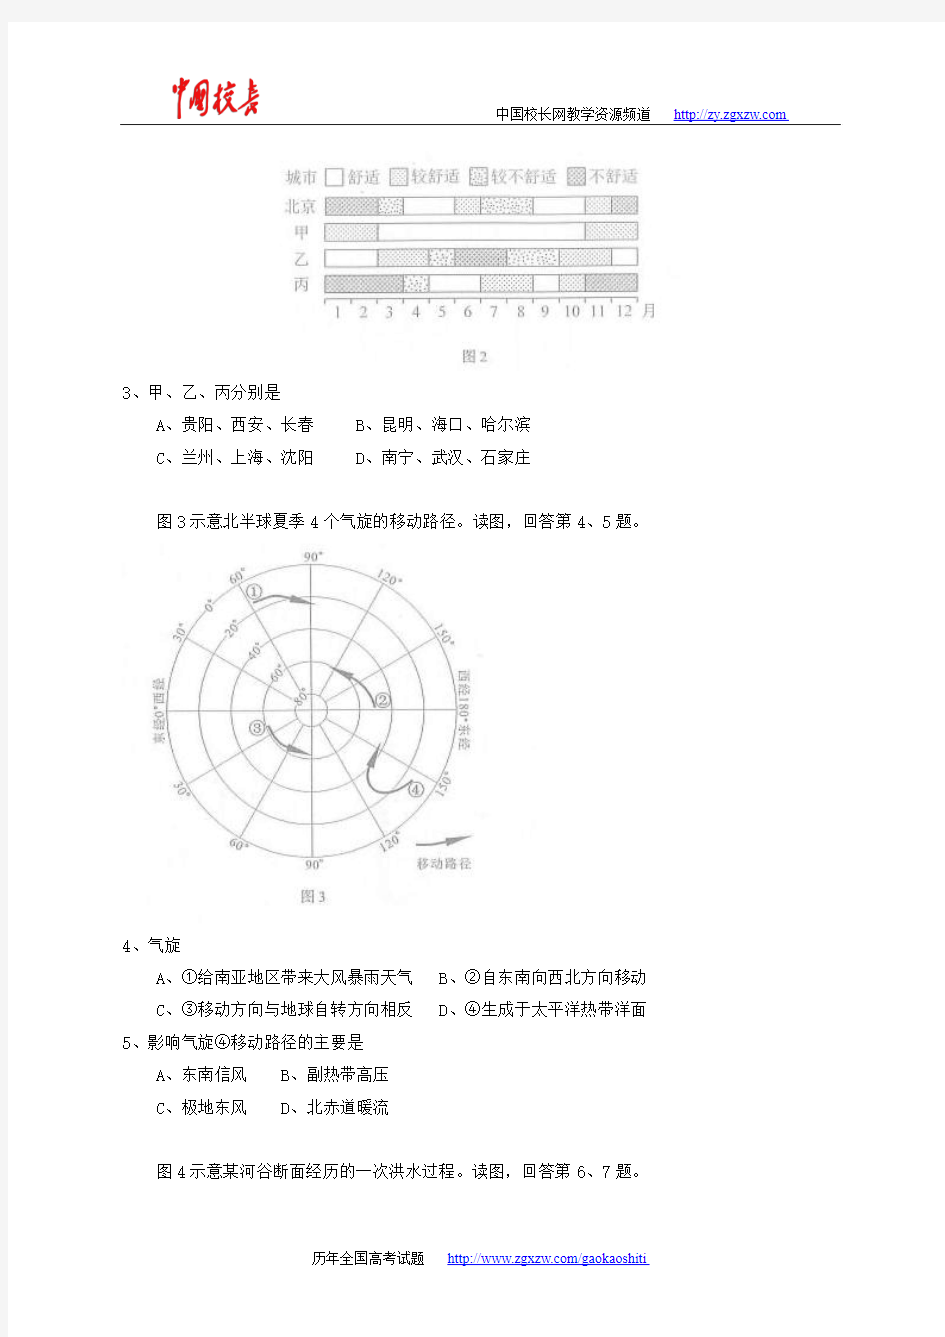 2014年全国高考文综试题及答案-北京卷